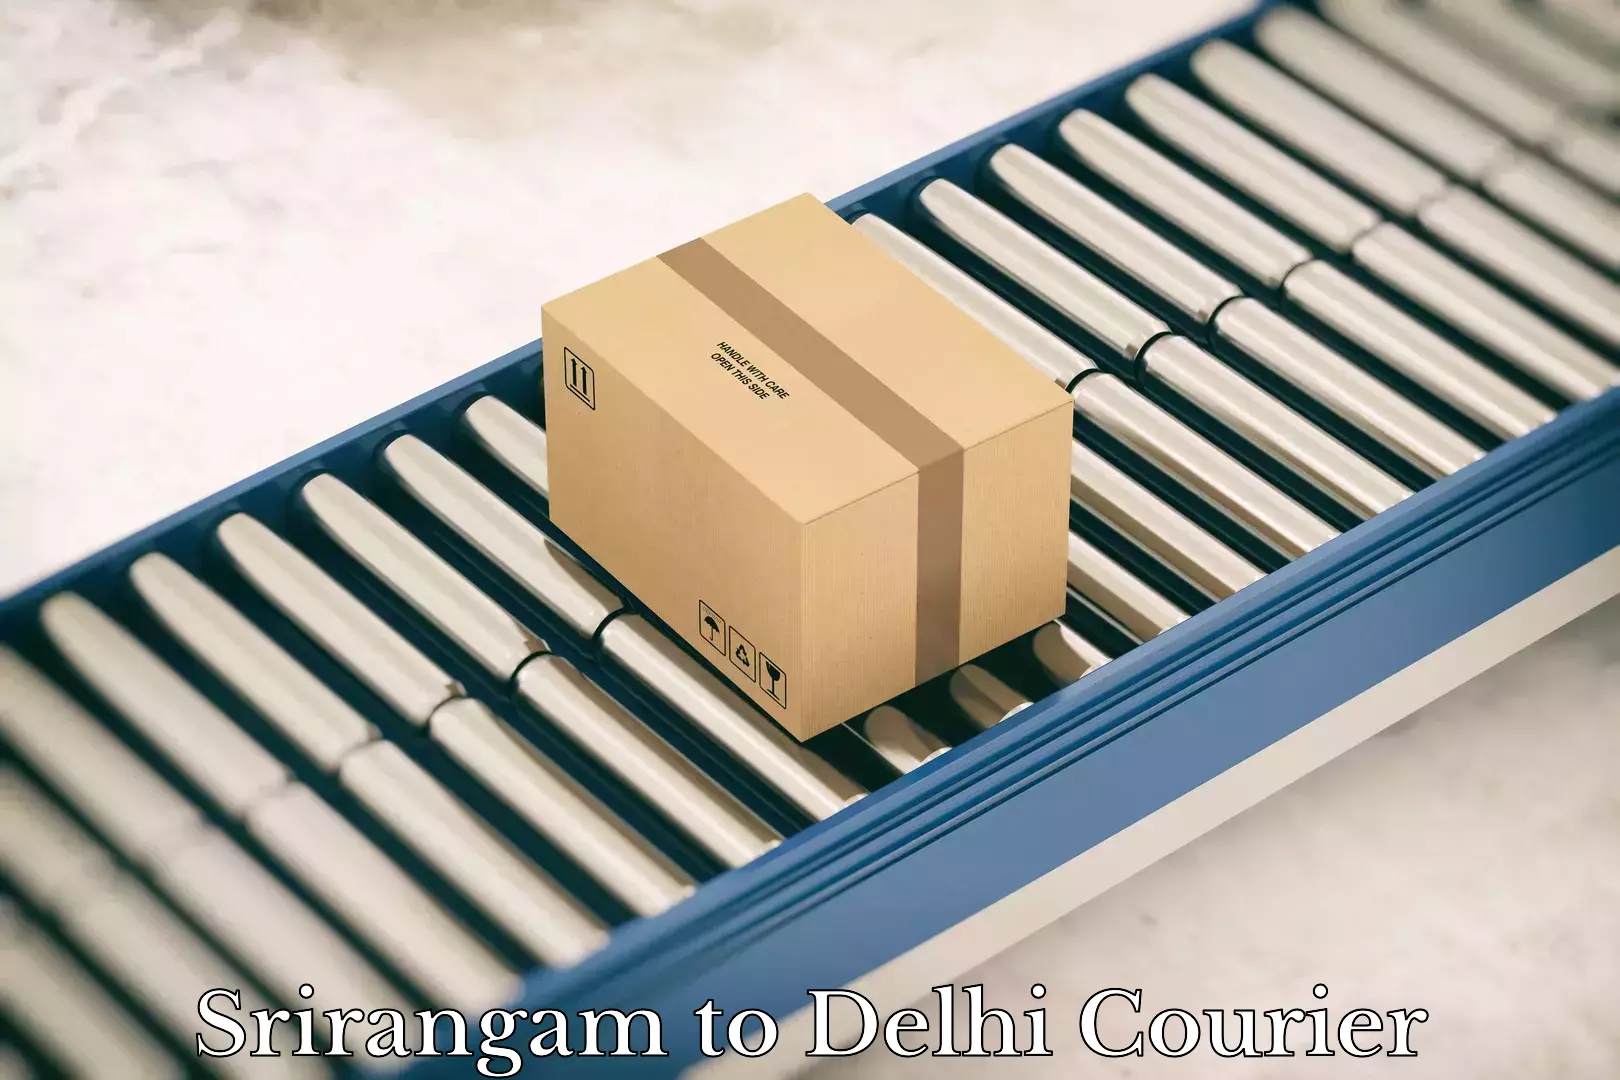 Door-to-door freight service Srirangam to Delhi